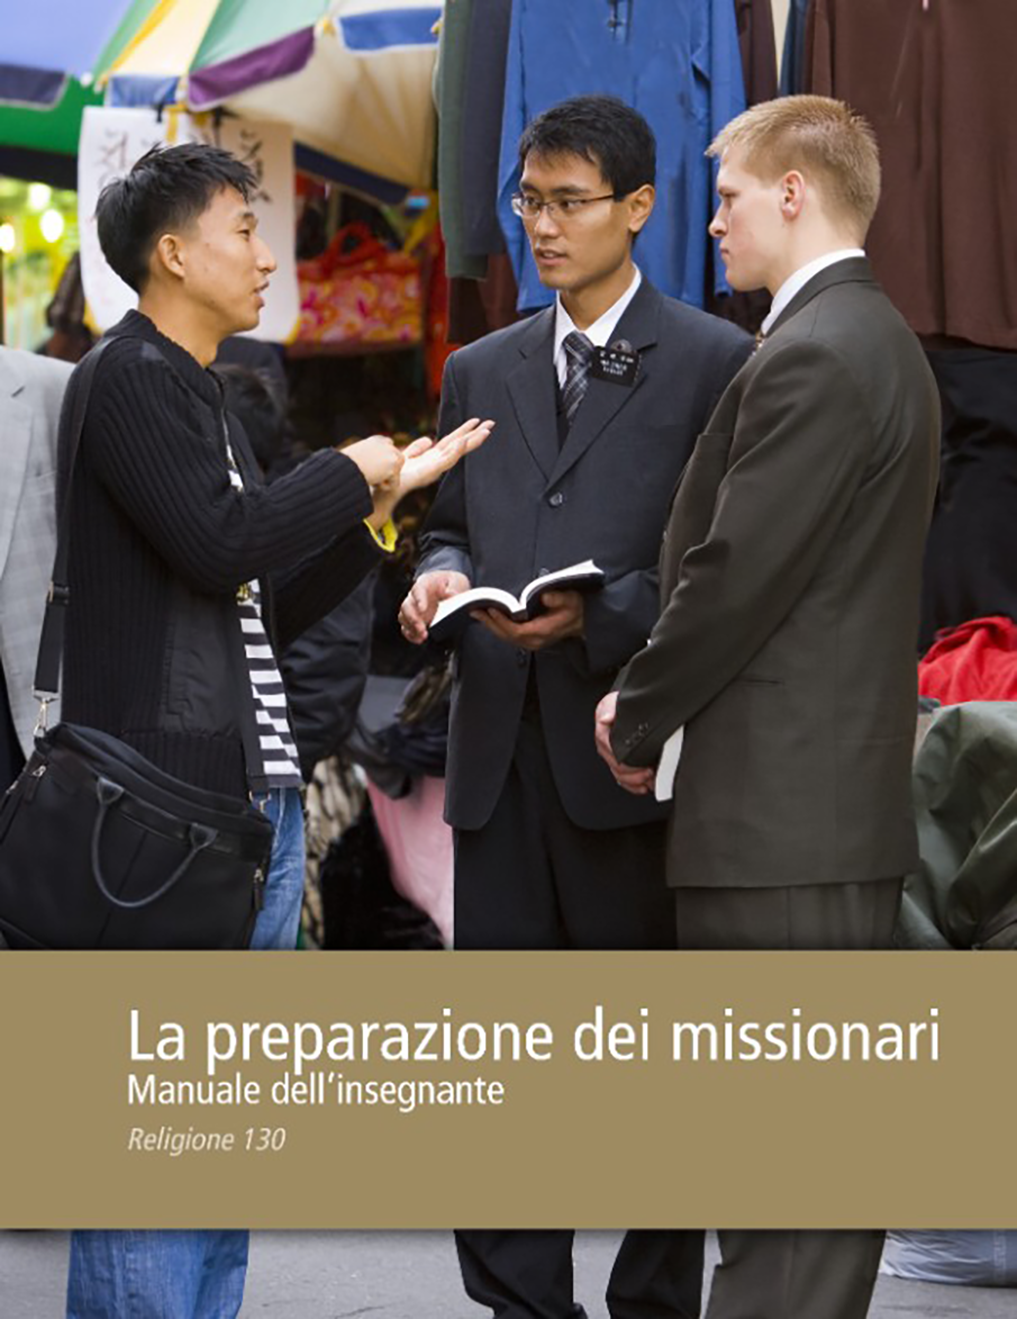 La preparazione dei missionari – Manuale dell’insegnante (Religione 130)